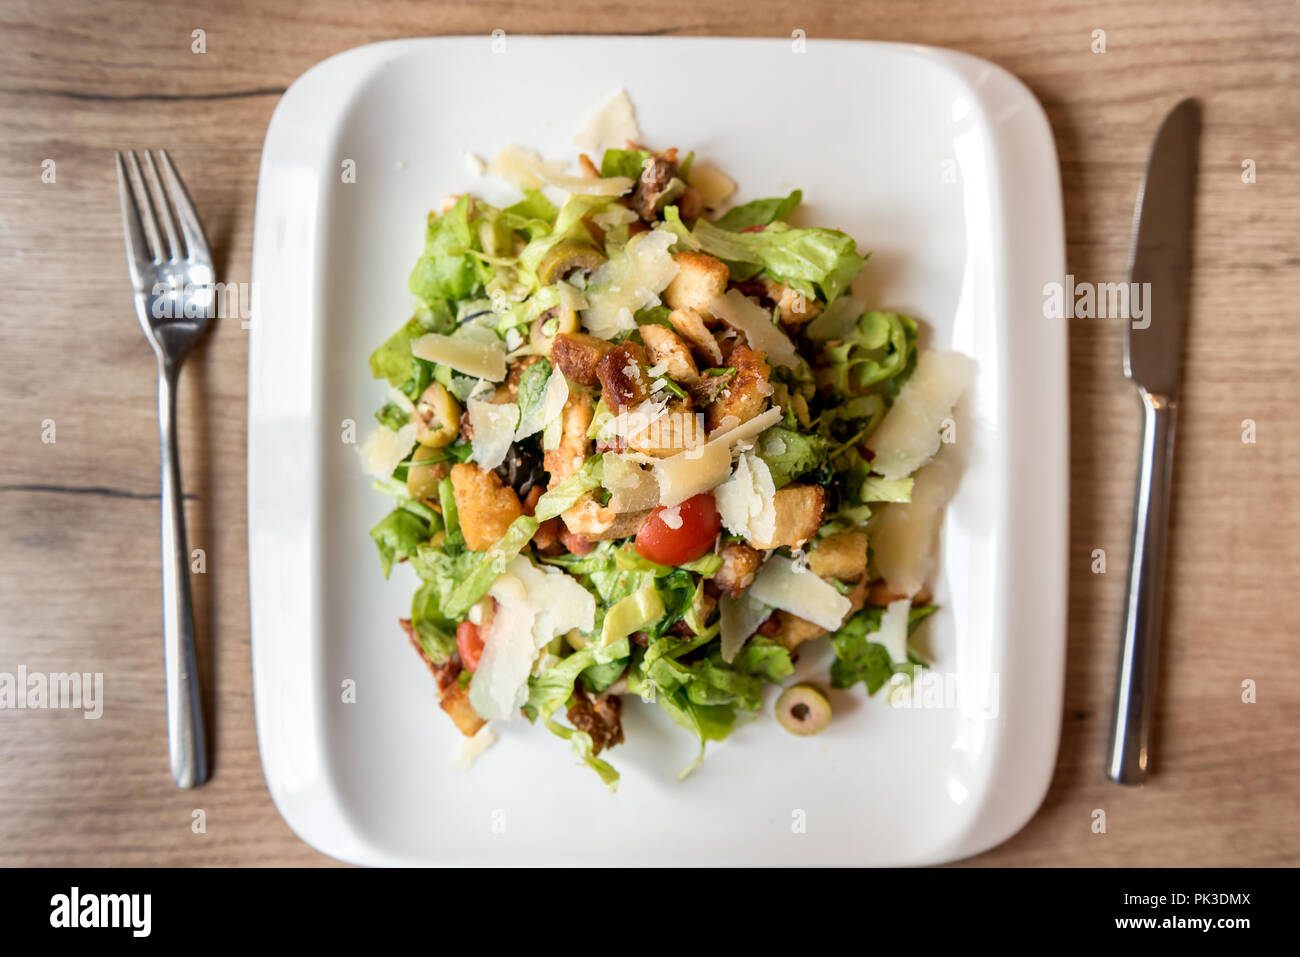 Piatto di insalata caesar con utensili sul ristorante tavolo in legno Foto Stock